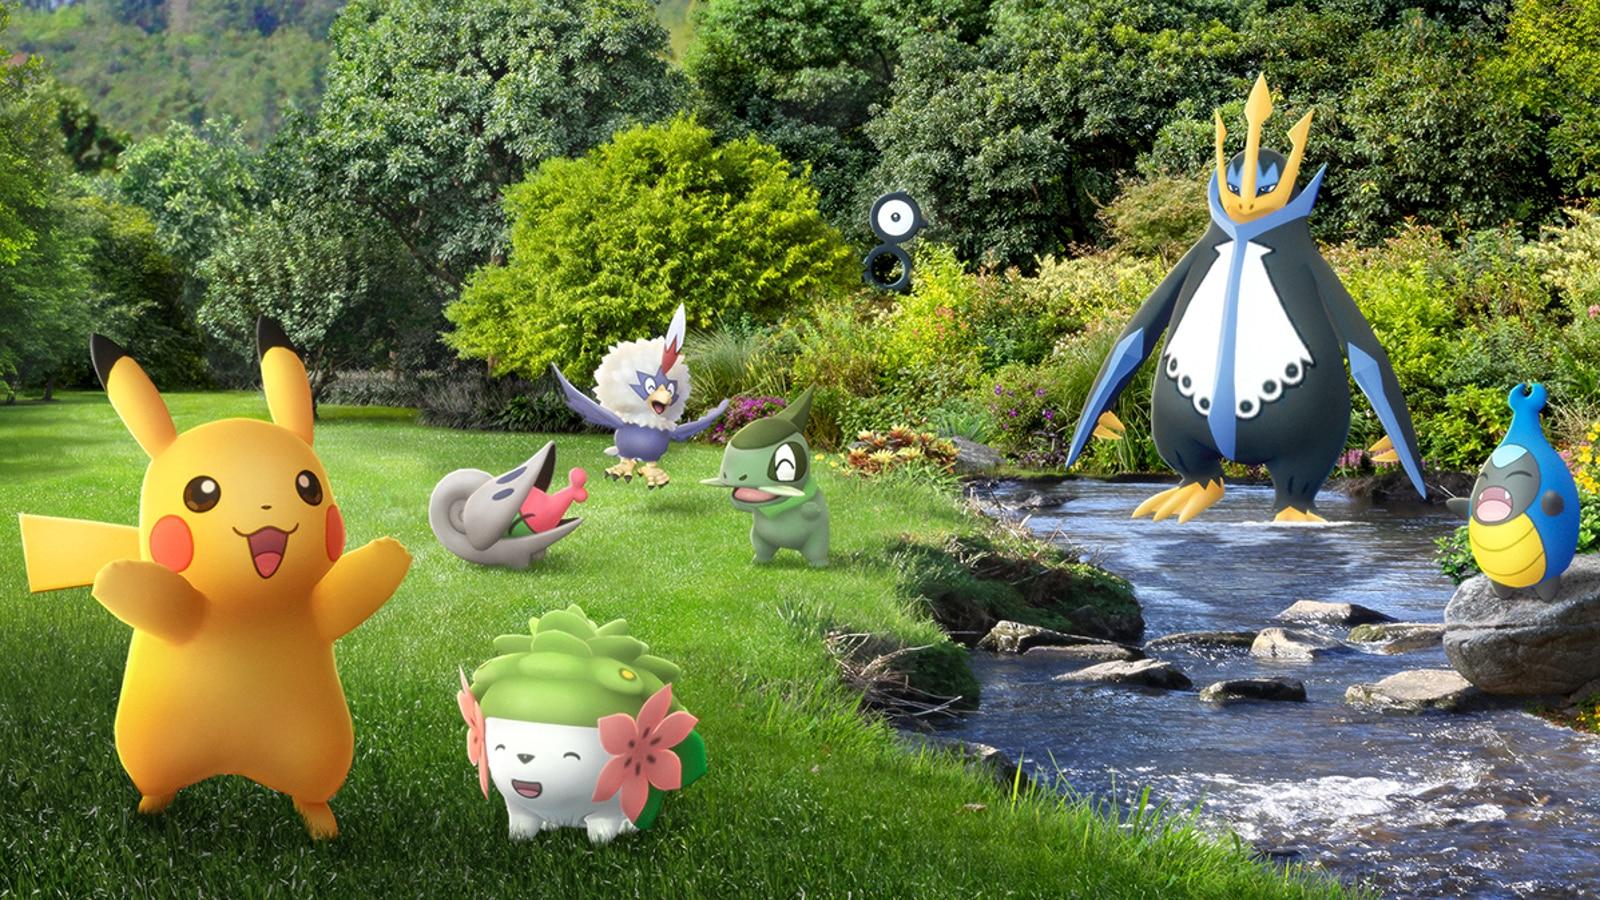 Os ingressos para o Pokémon GO Fest: Seattle já estão à venda!